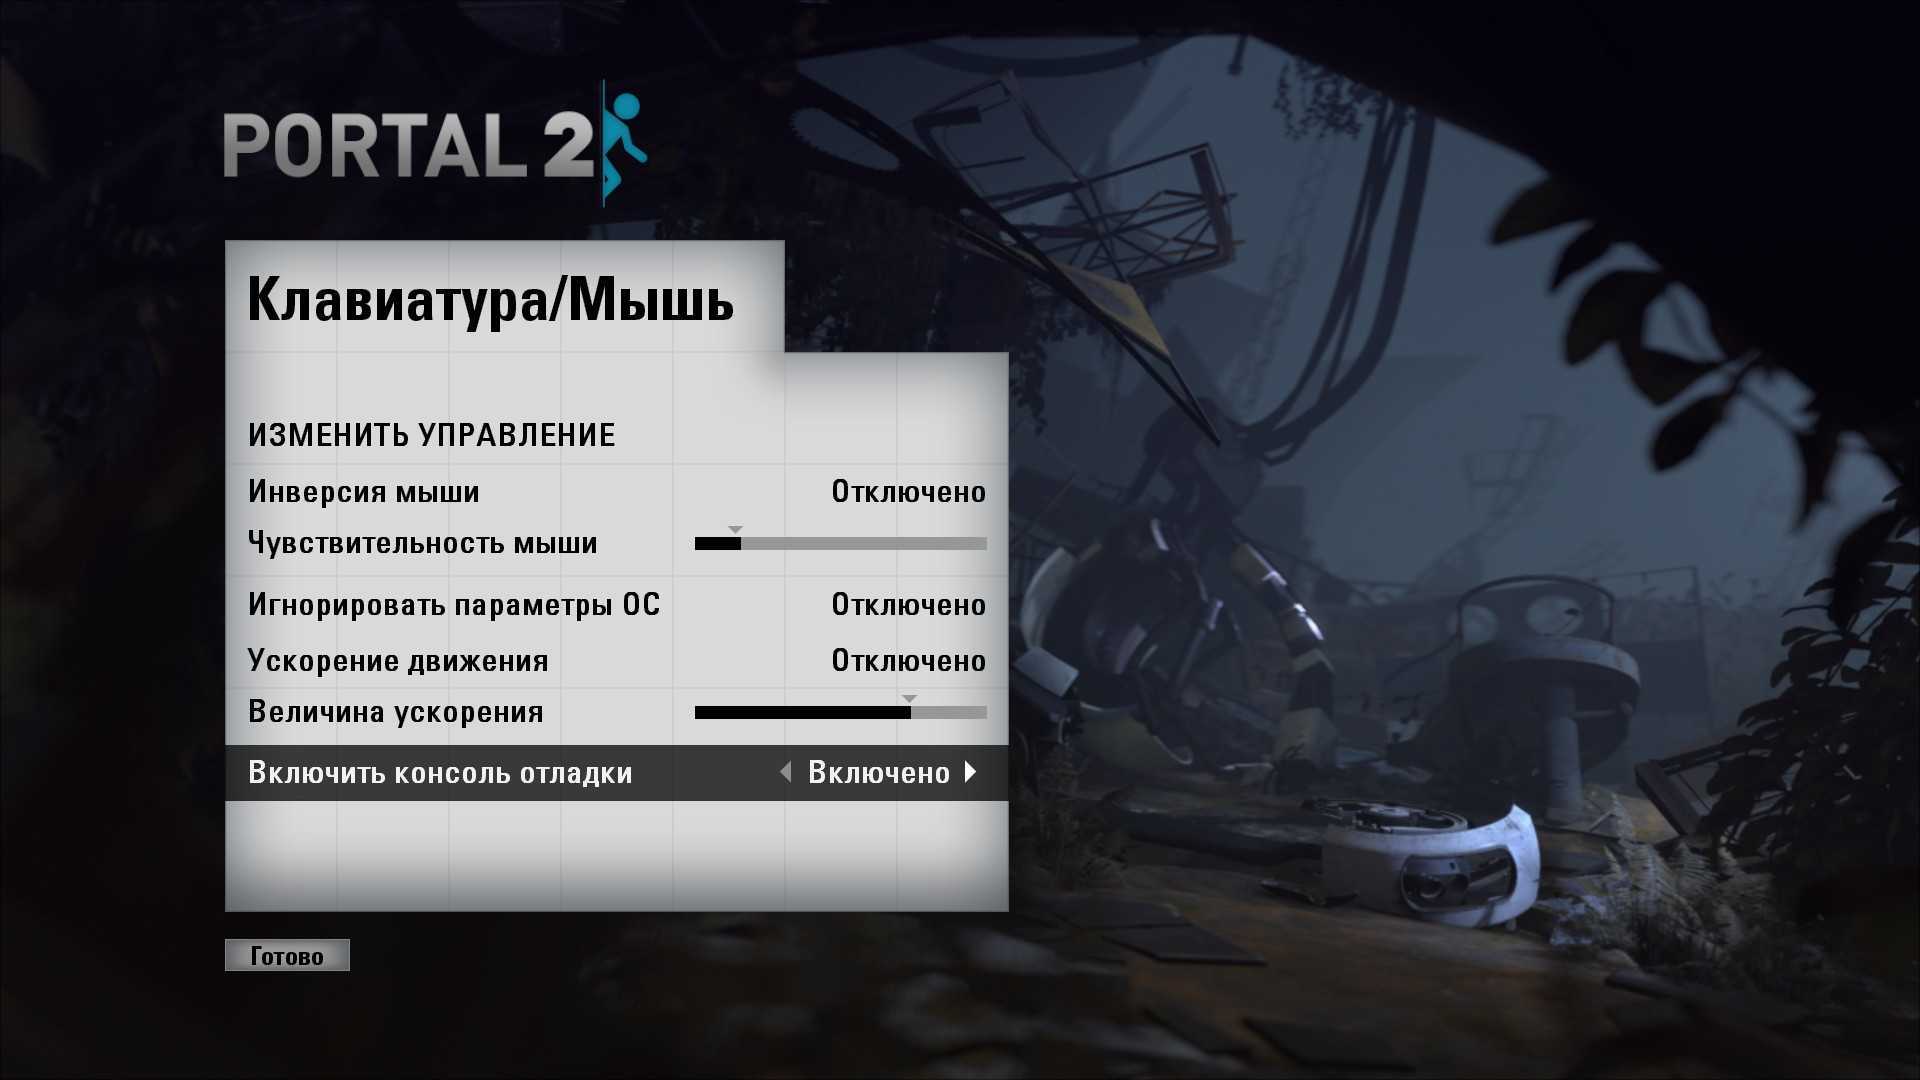 Portal 2 console commands фото 5